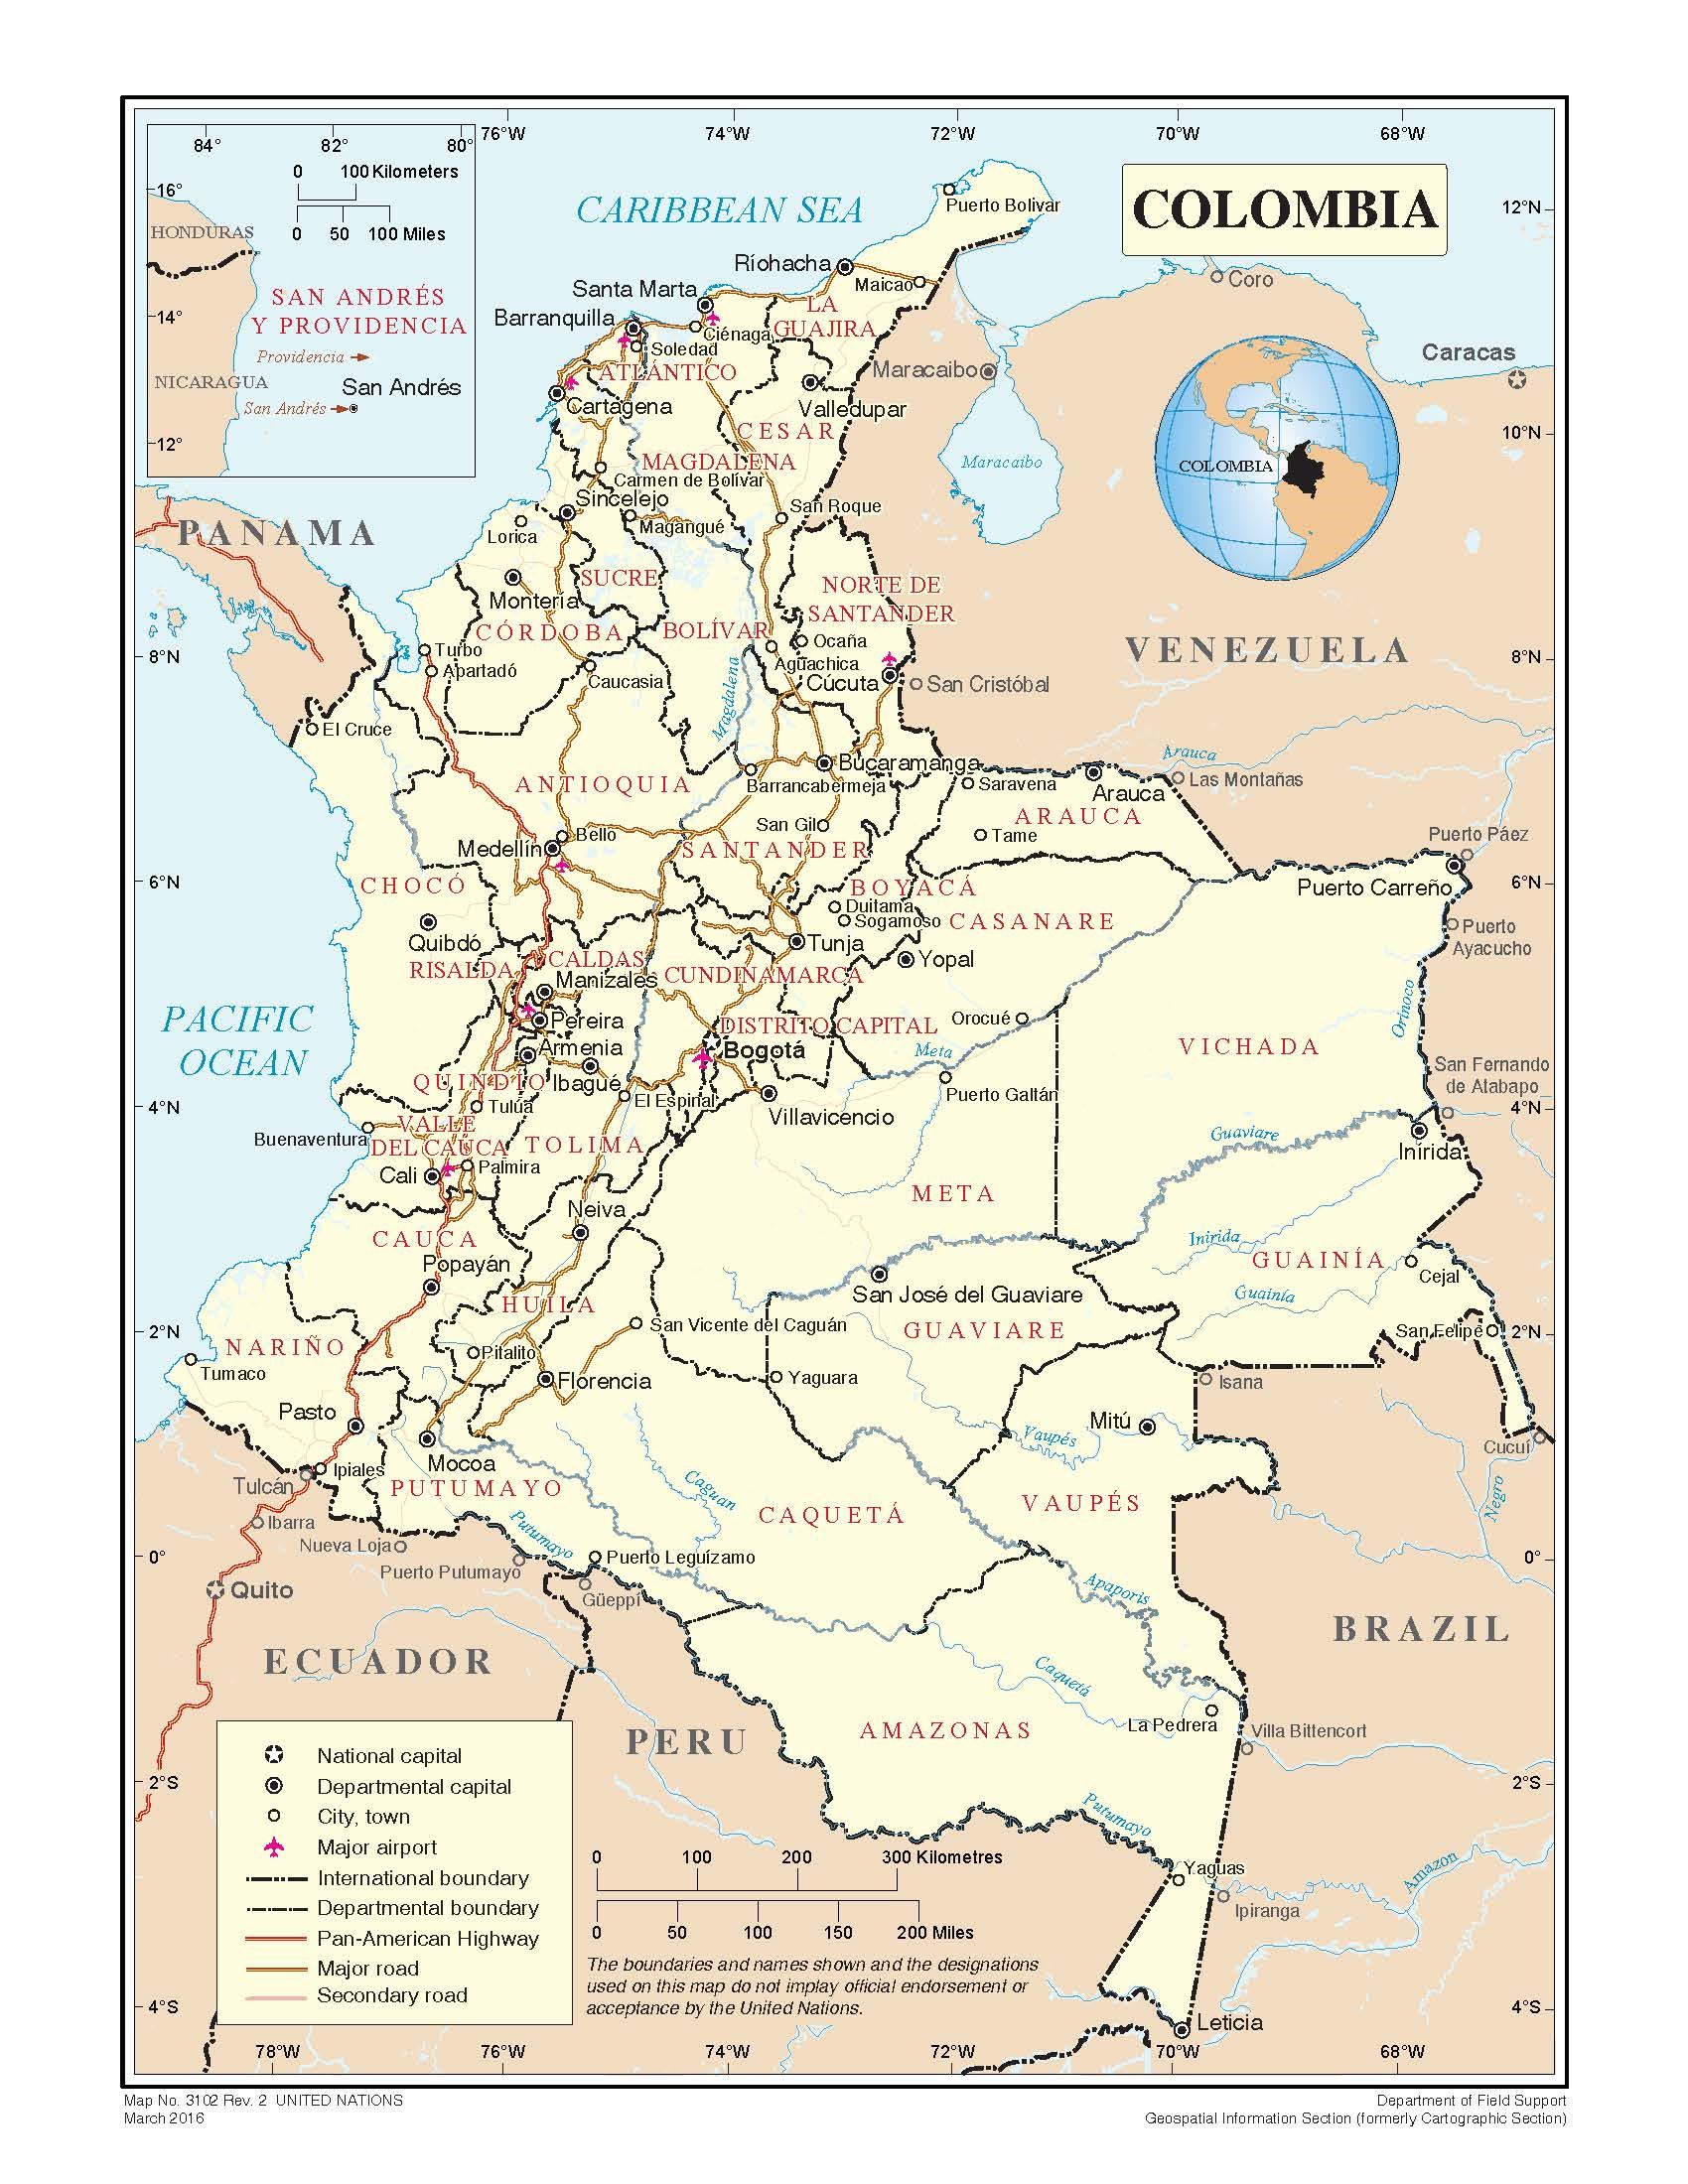 L'image est une carte géographique de la Colombie